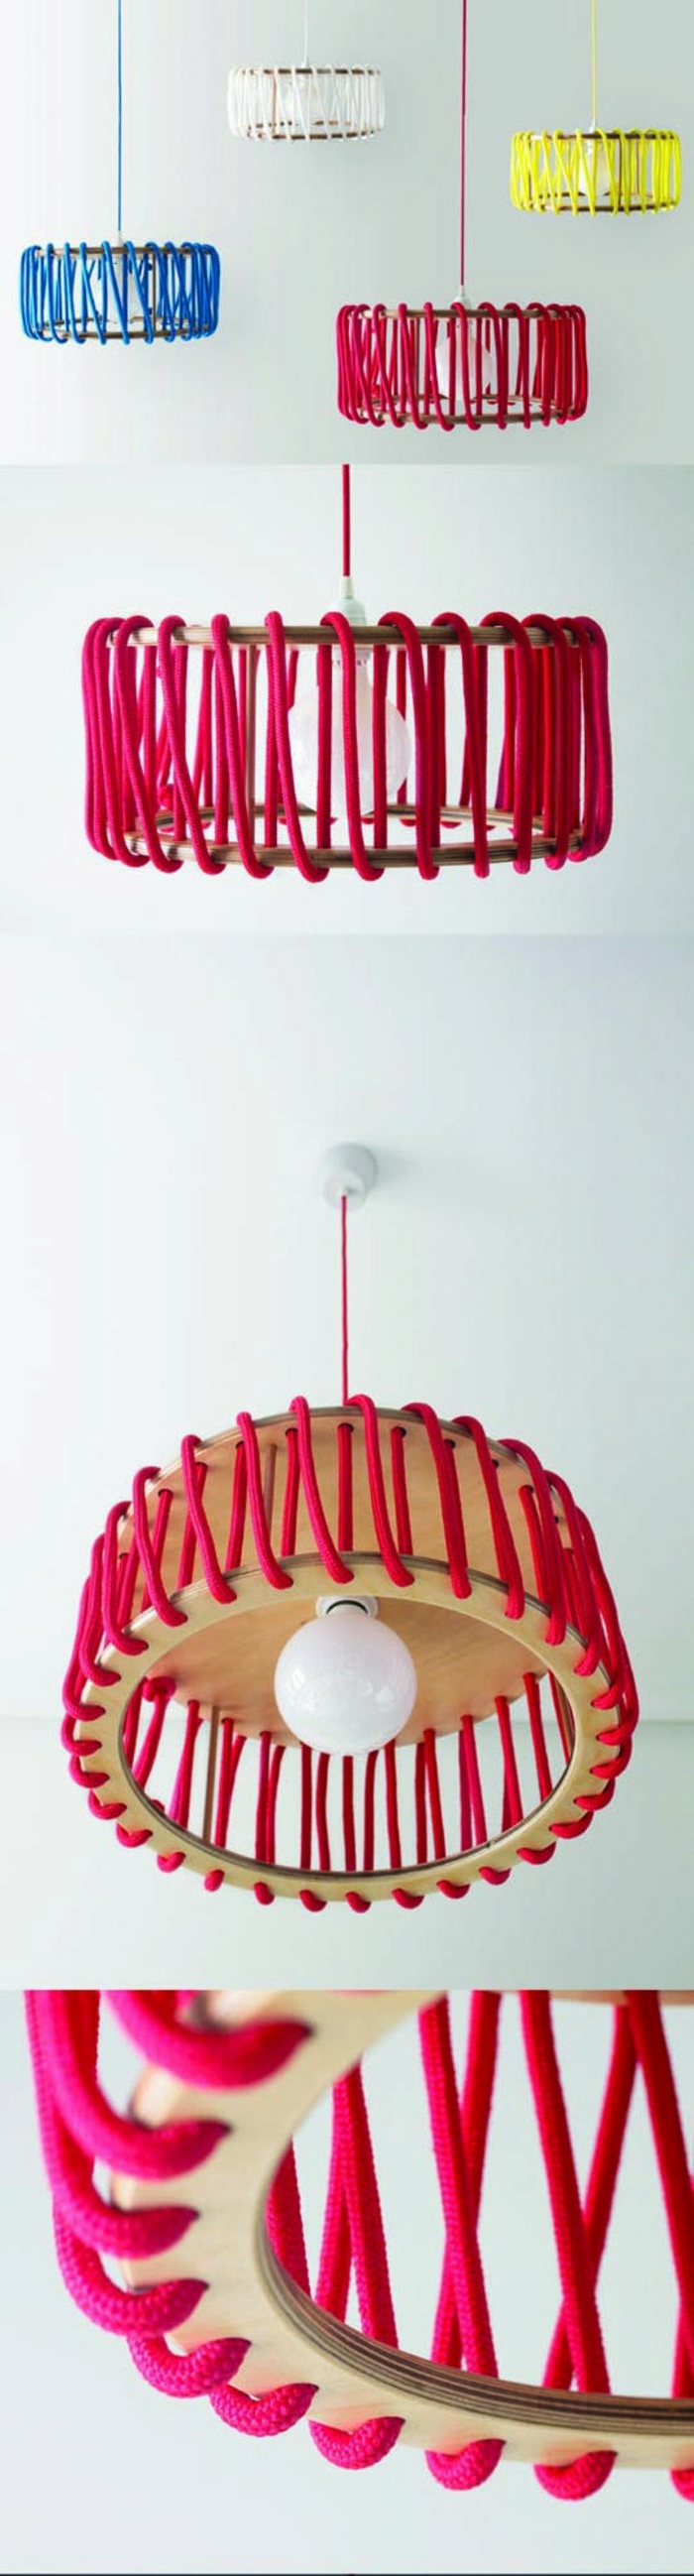 selbstgemachte Lampenschirme aus Holzbrettern, Holzringen und farbigen Seilen